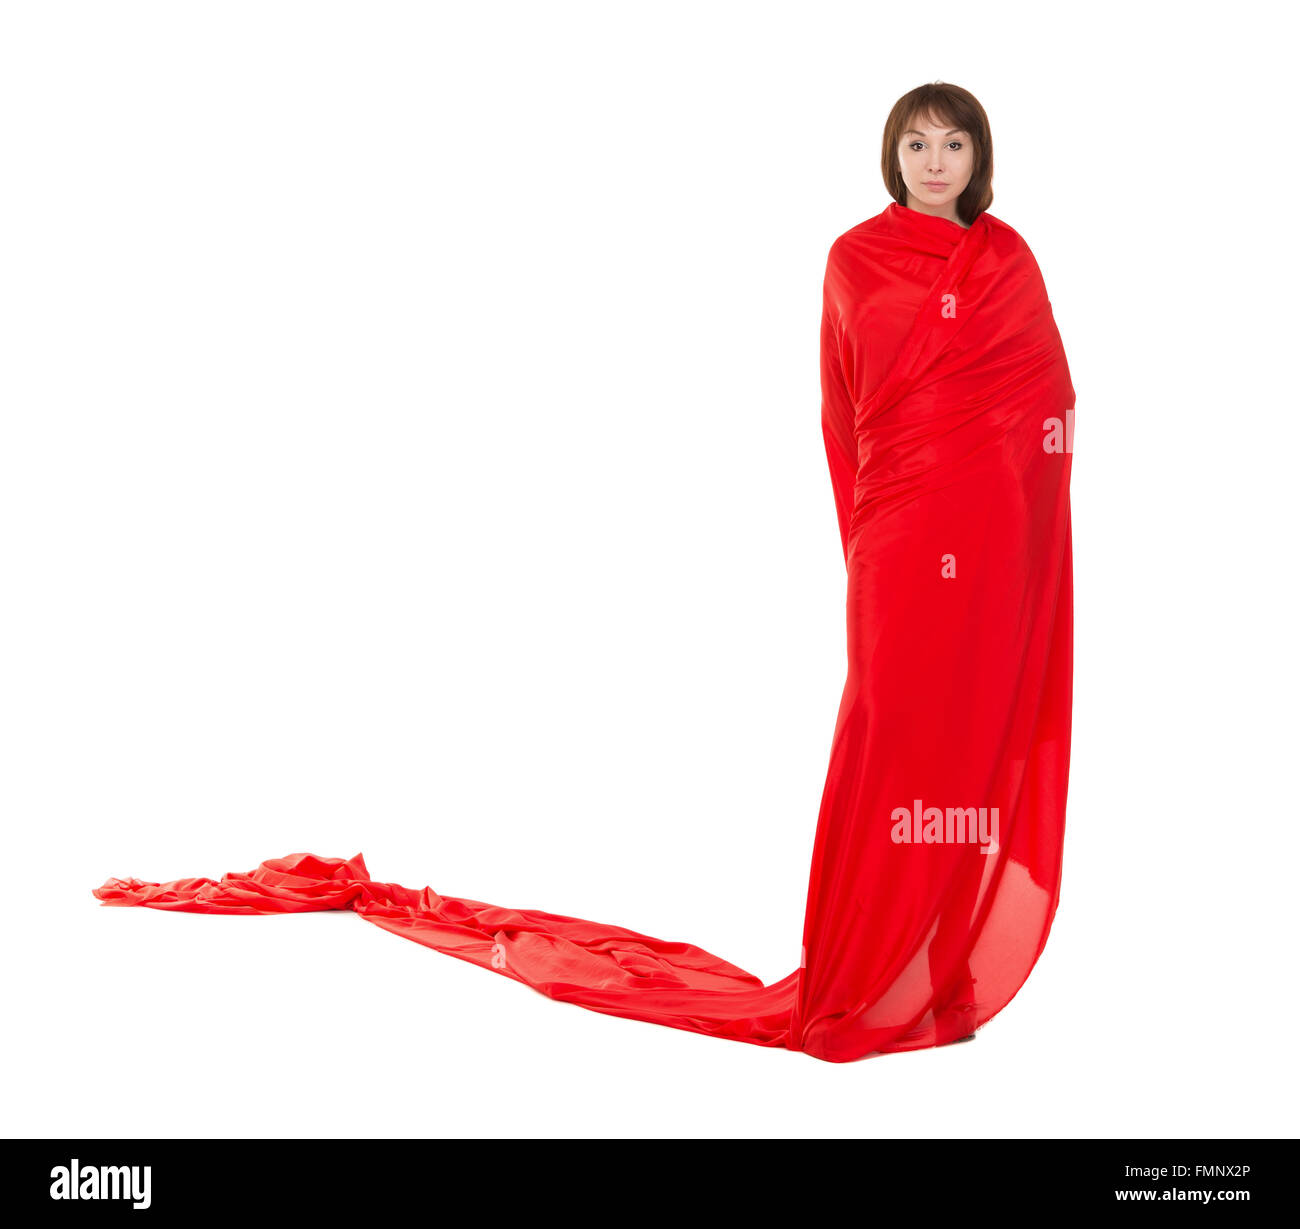 Schöne Frau im roten Kleid, isoliert auf weißem Hintergrund Stockfoto